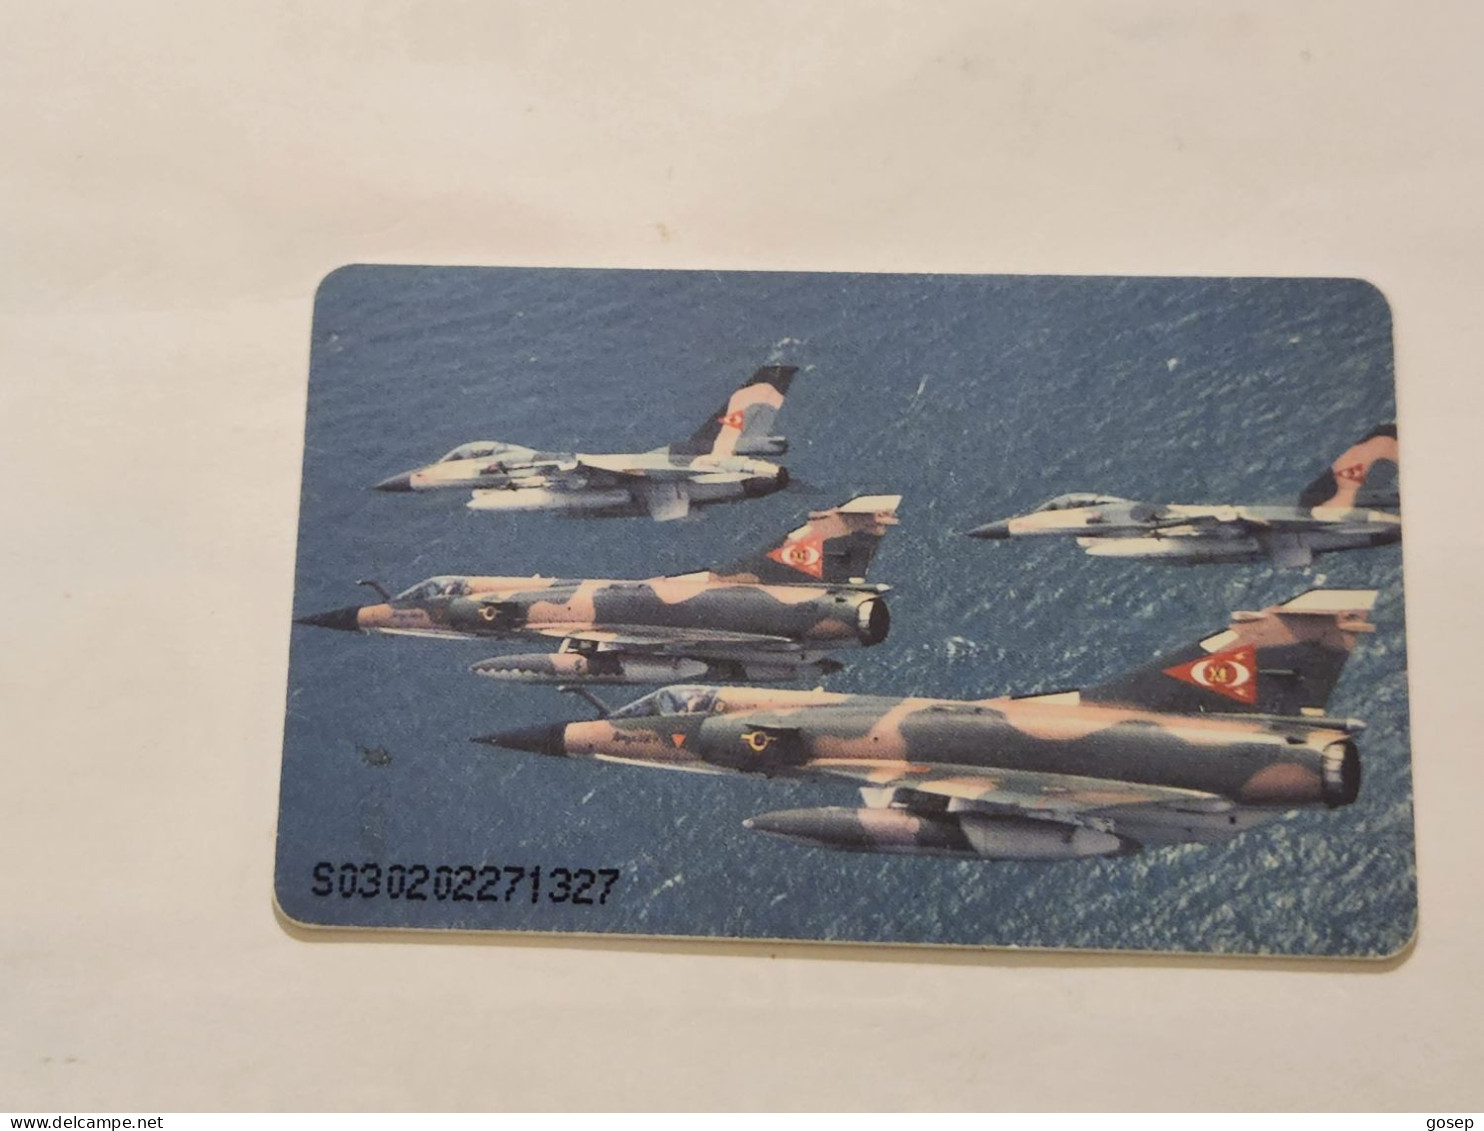 Venezuela-(VE-CAN2-0771)-Mirage Y F-16-(2/8)-(224)(Bs.3.000)(S030202271327)-used Card+1card Prepiad Free - Venezuela